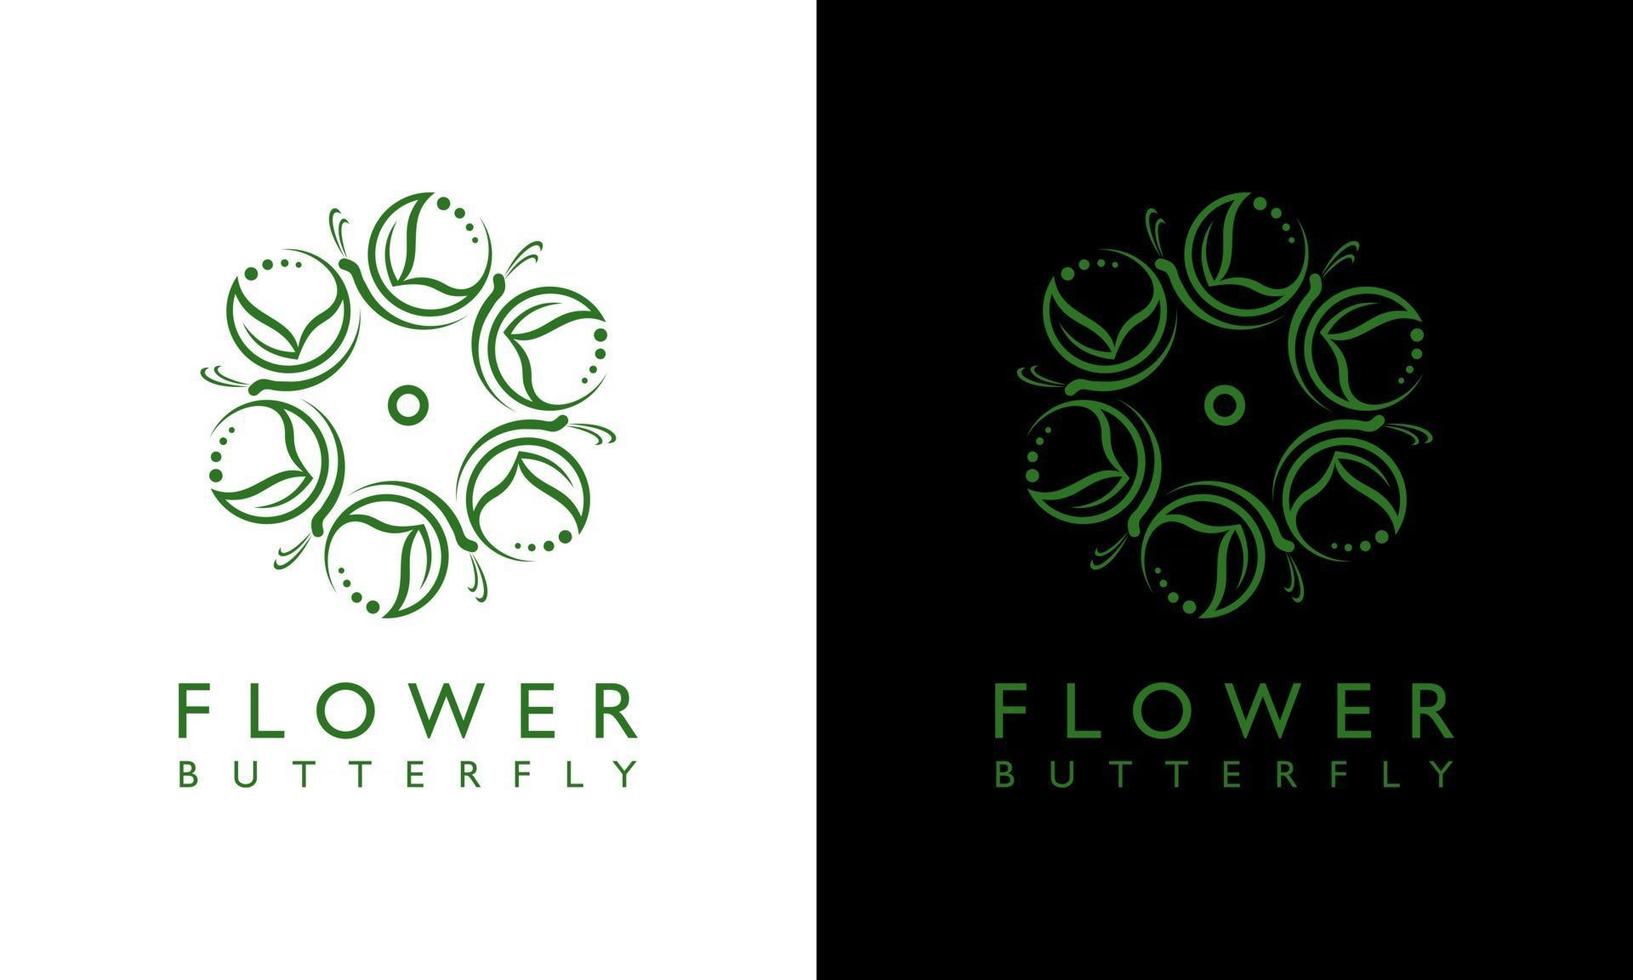 Gráfico vectorial de ilustración del diseño del logotipo del concepto de mariposa floral femenino que se adapta a todas partes vector